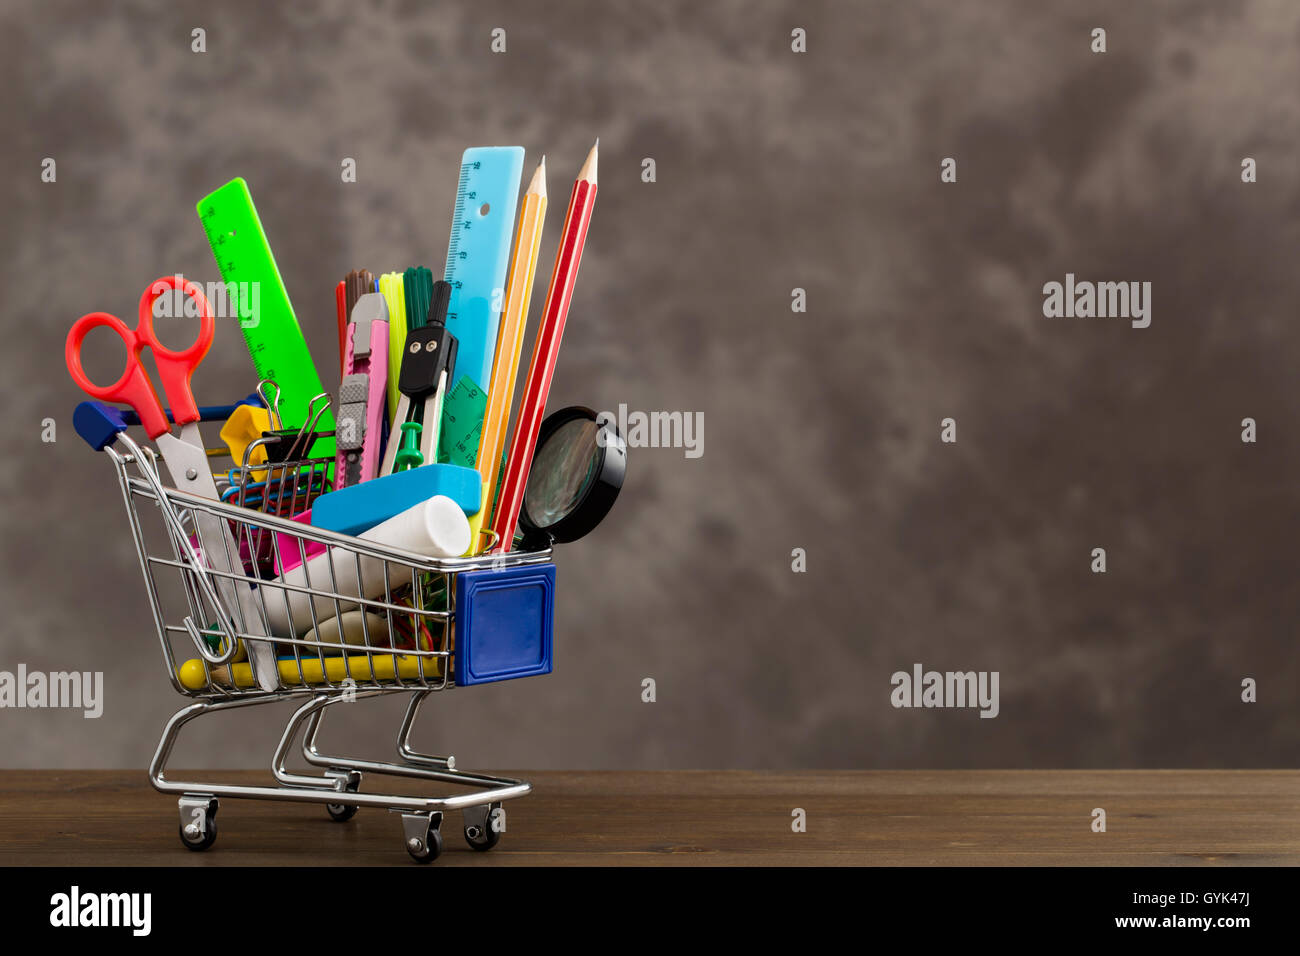 Schreibwaren im Einkaufswagen auf der linken Seite Stockfoto